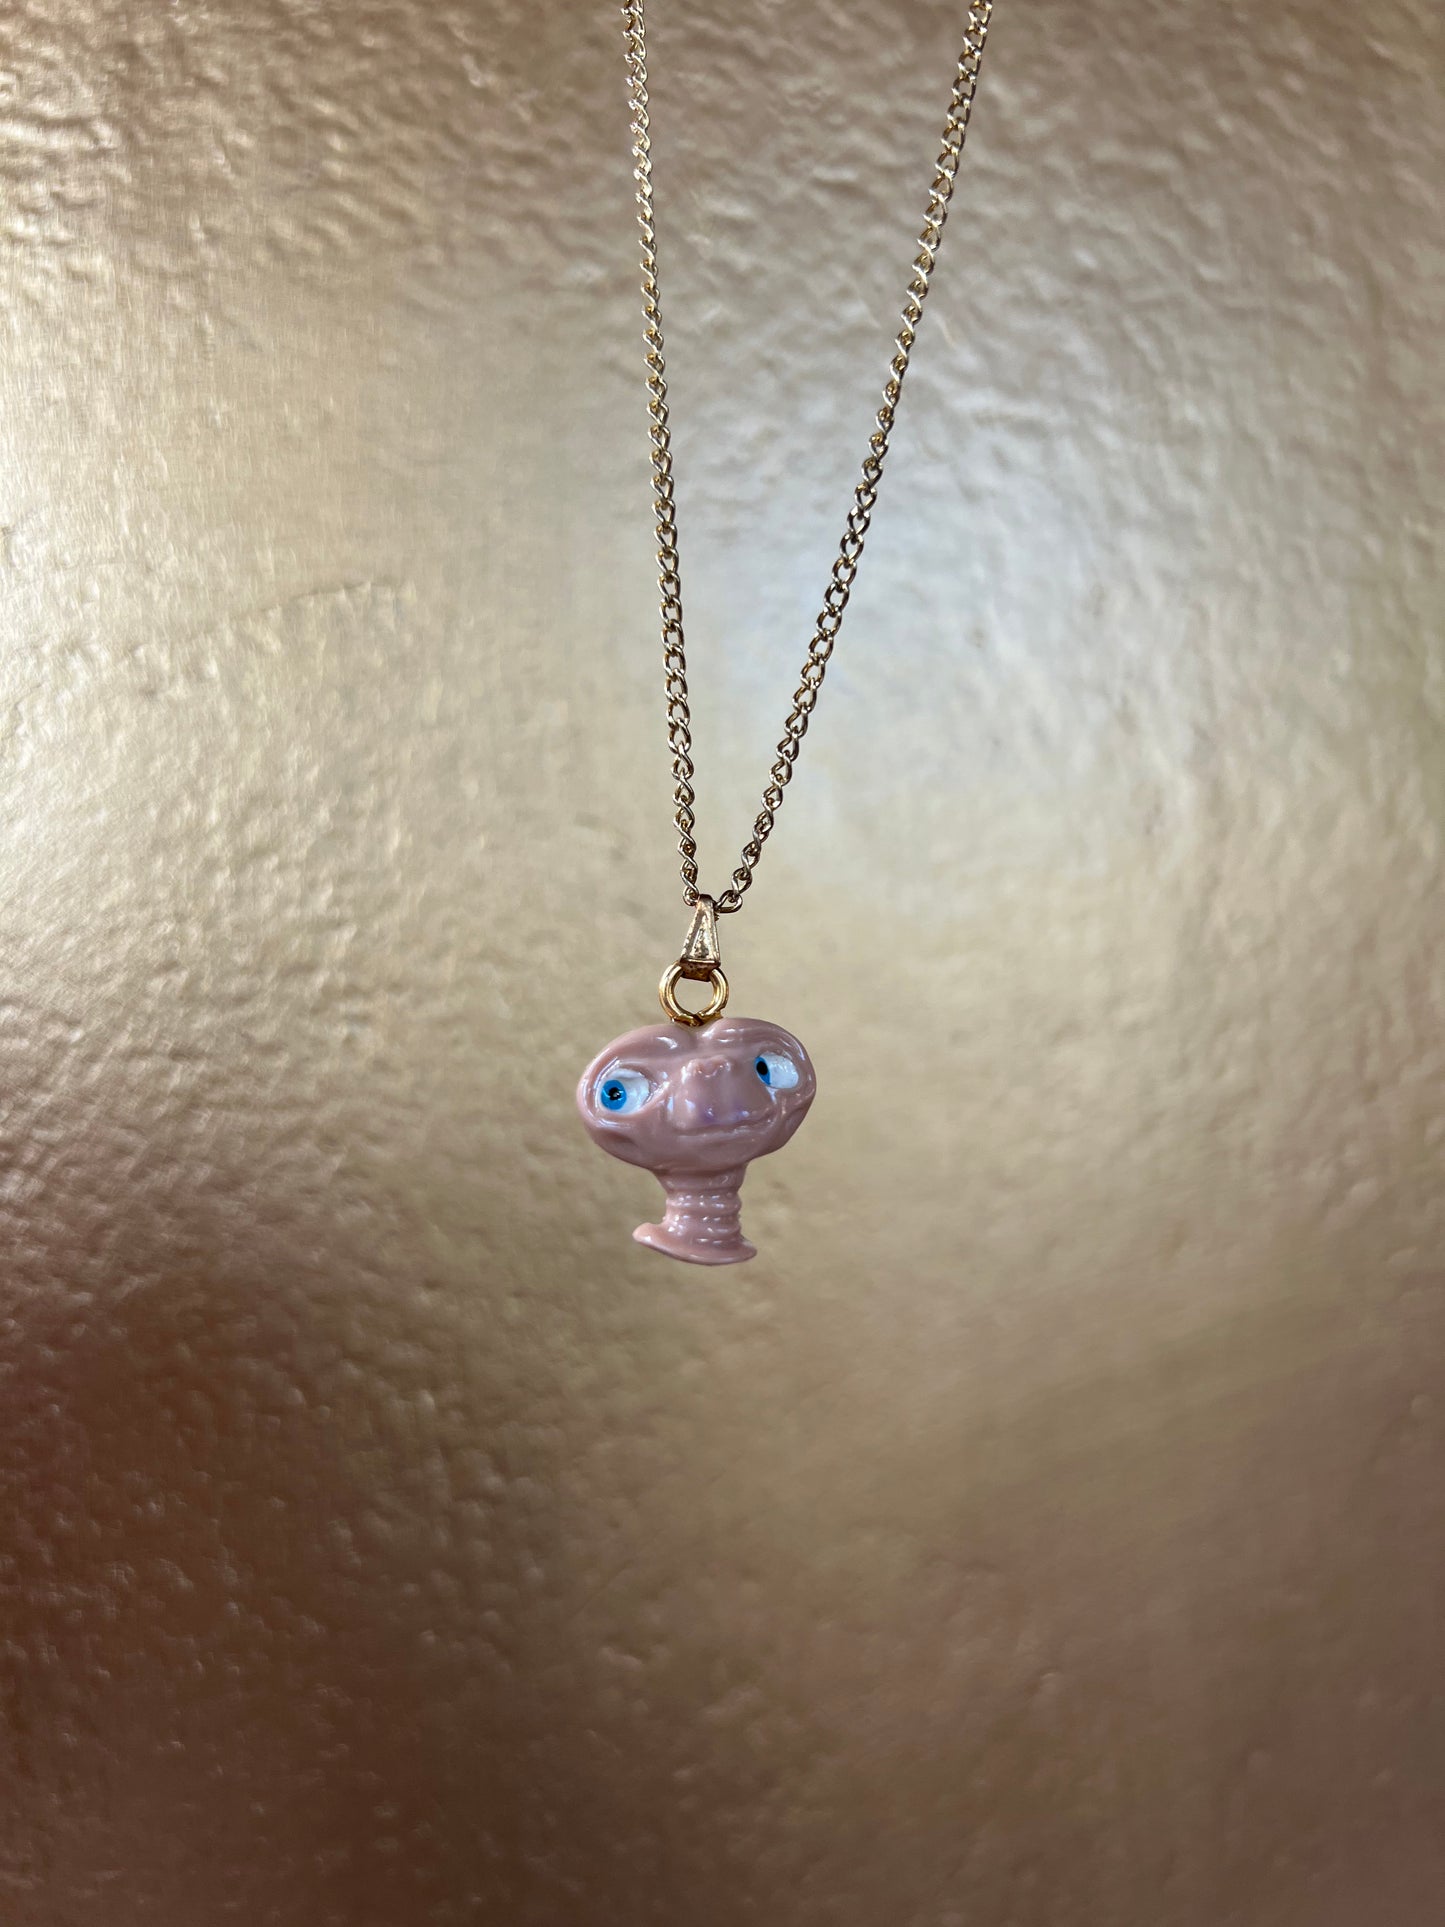 ET necklace